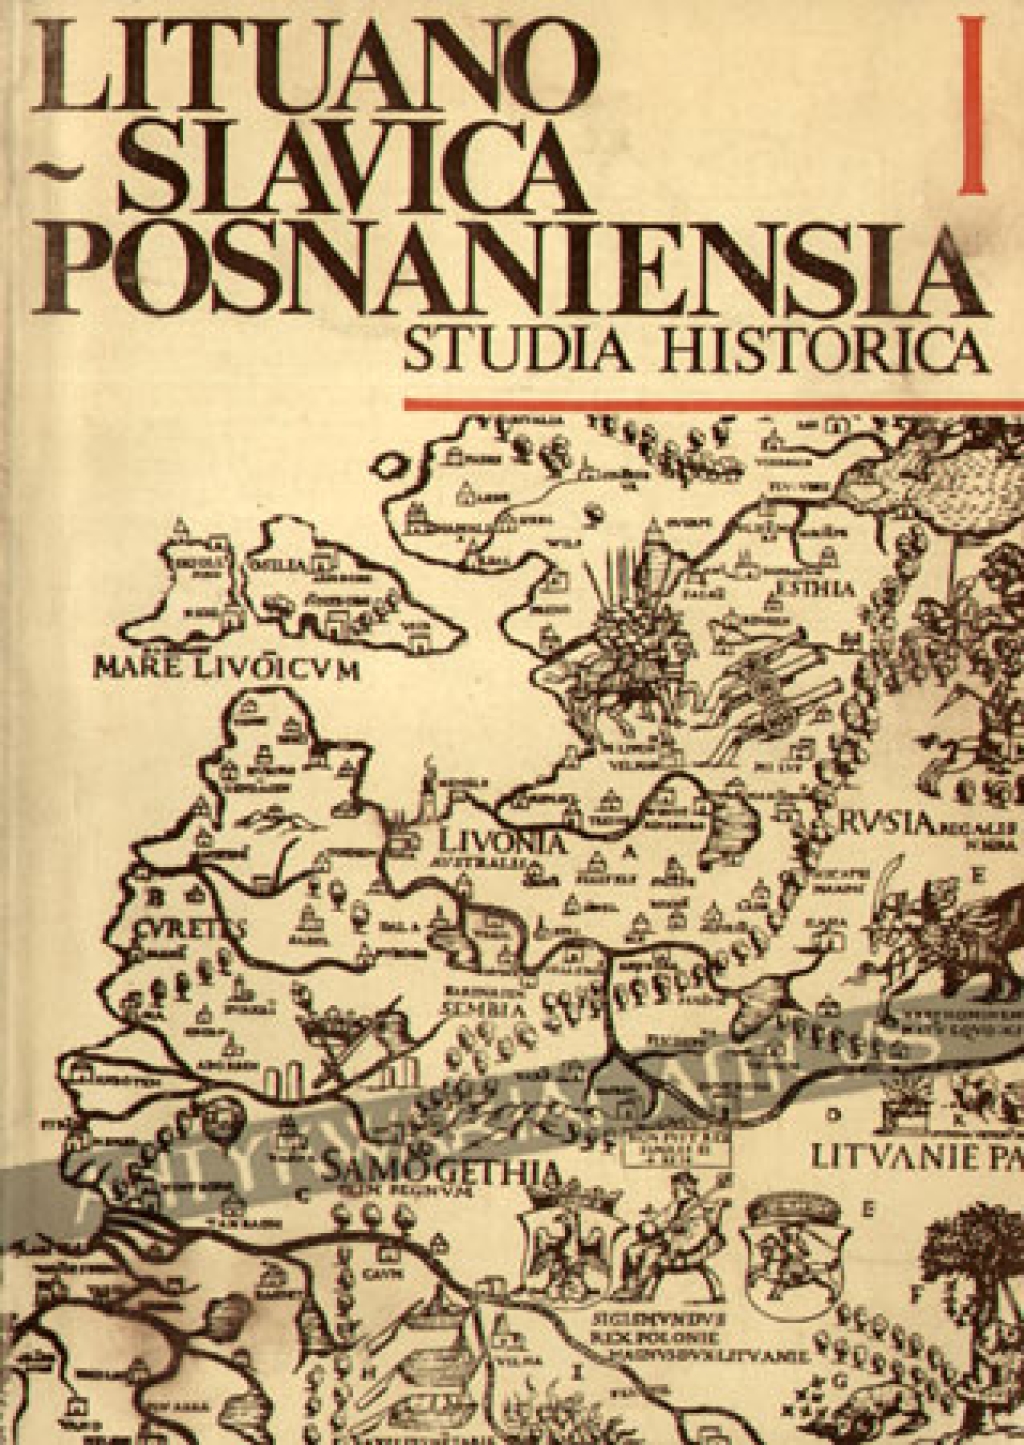 Lituano-Slavica Posnaniensia. Studia historica, vol. I